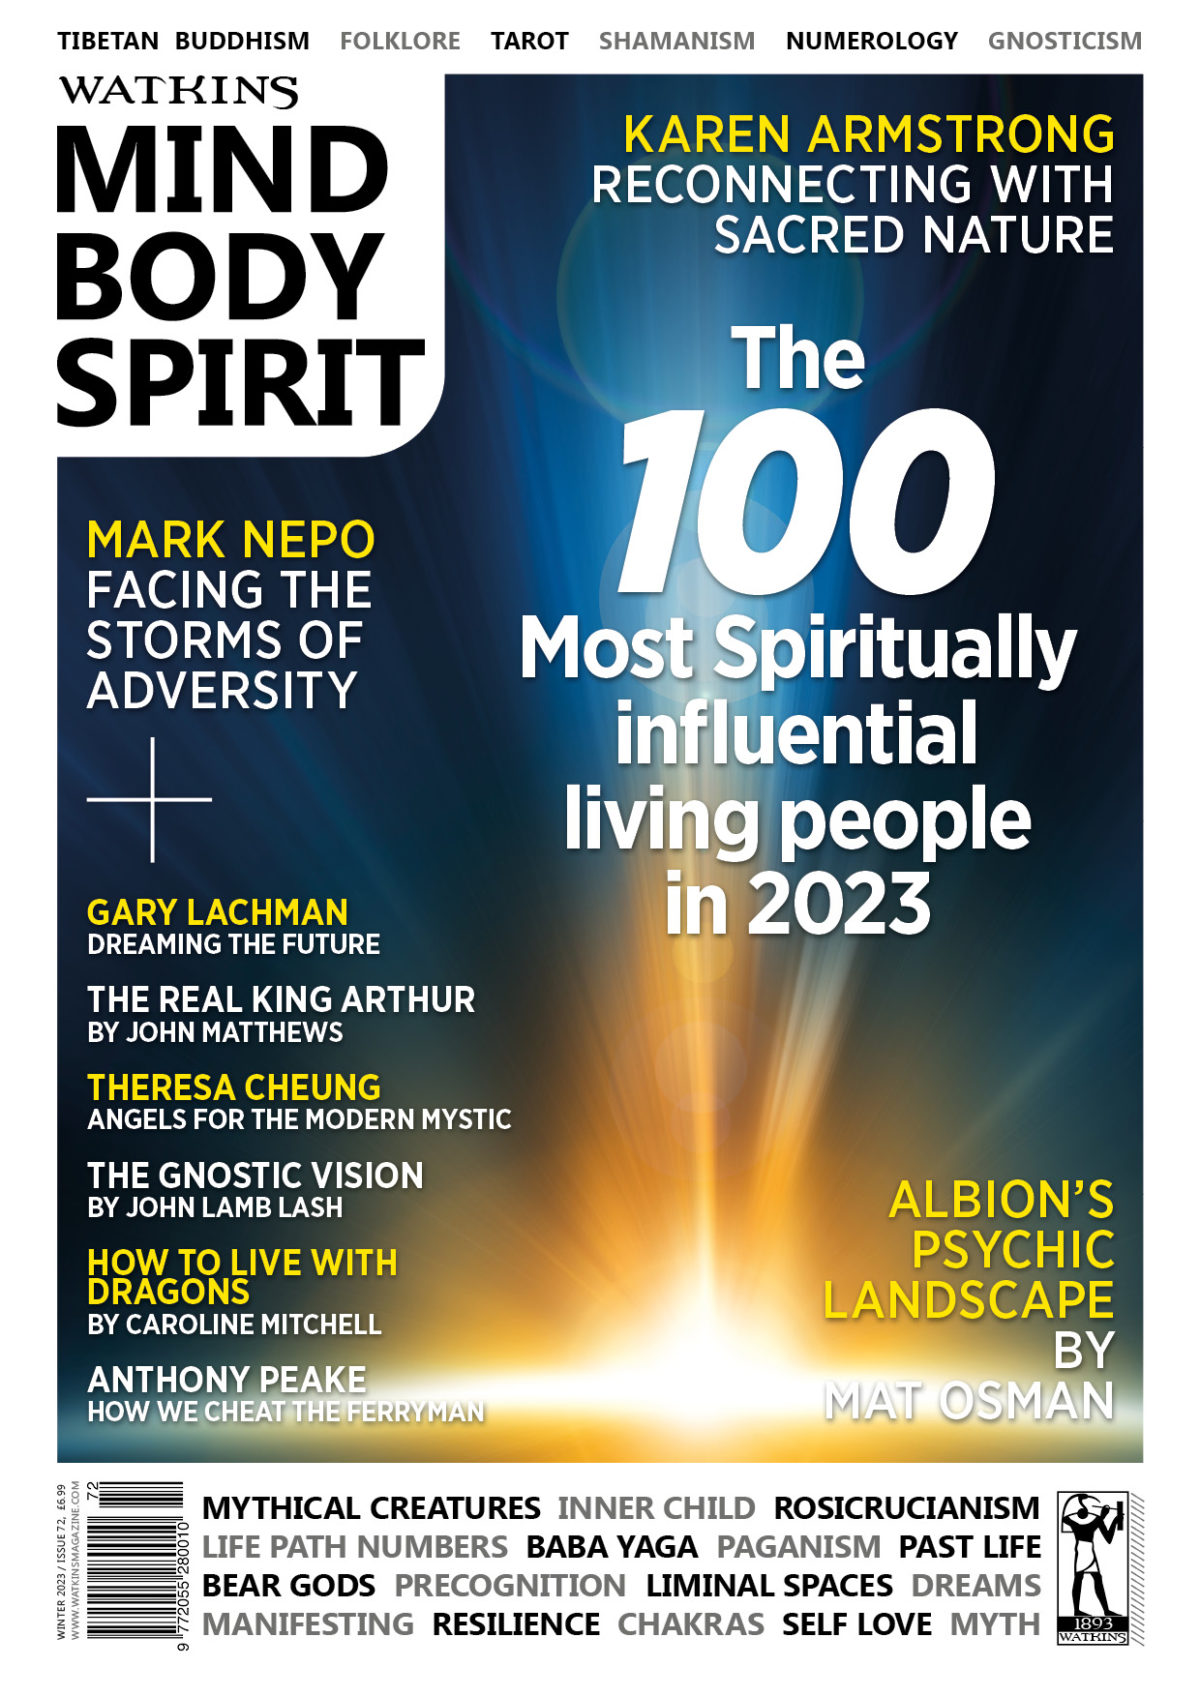 Watkins’ Spiritual 100 List for 2023